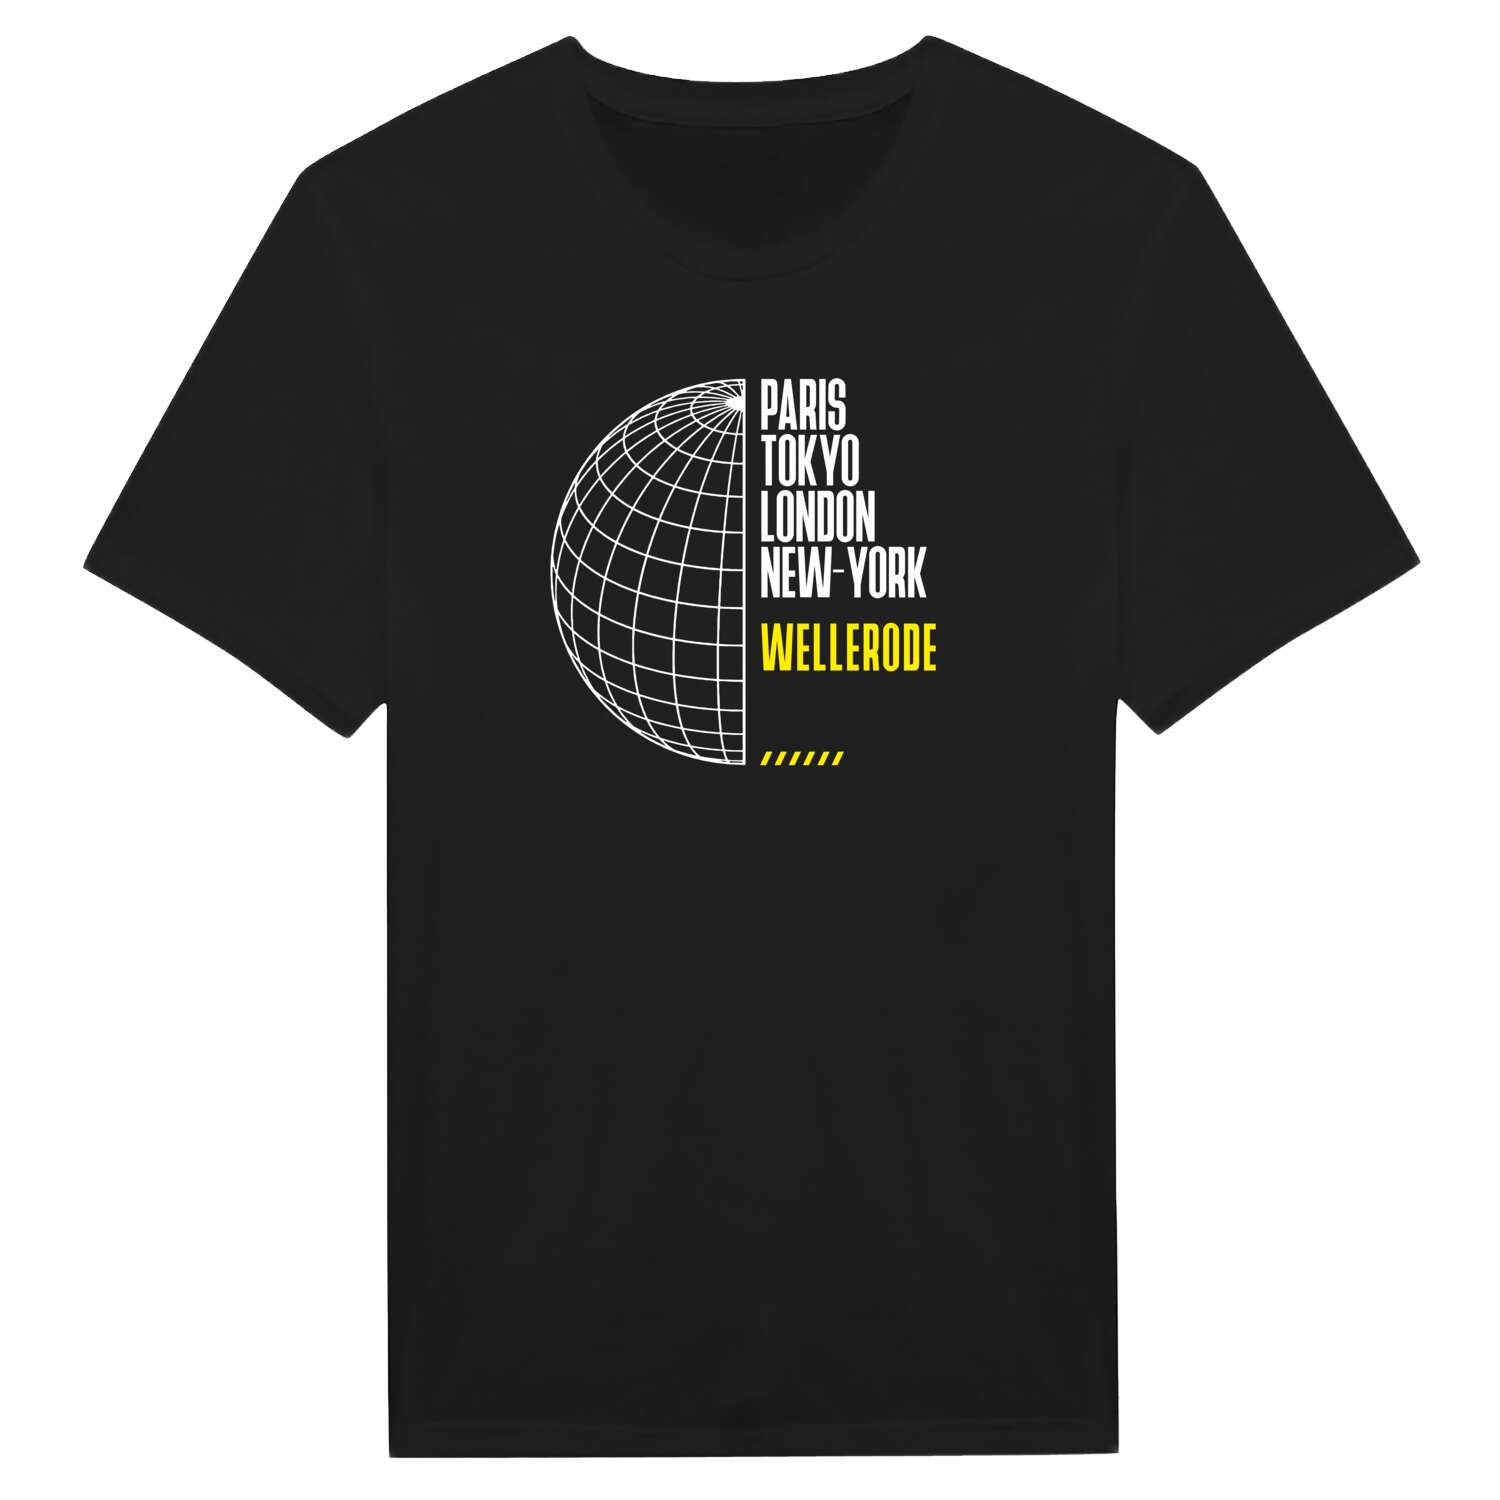 Wellerode T-Shirt »Paris Tokyo London«